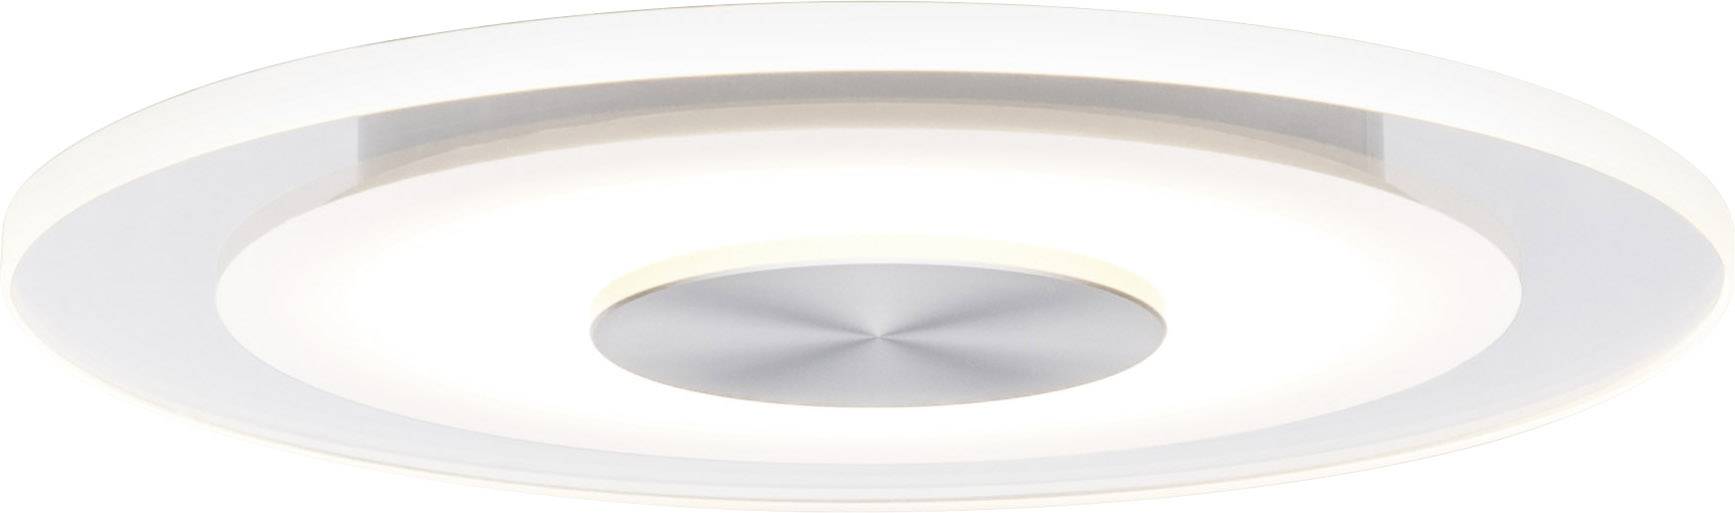 PAULMANN Whirl 92907 LED-Einbauleuchte 3er Set 16.5 W Warm-Weiß Aluminium (gebürstet), Satin